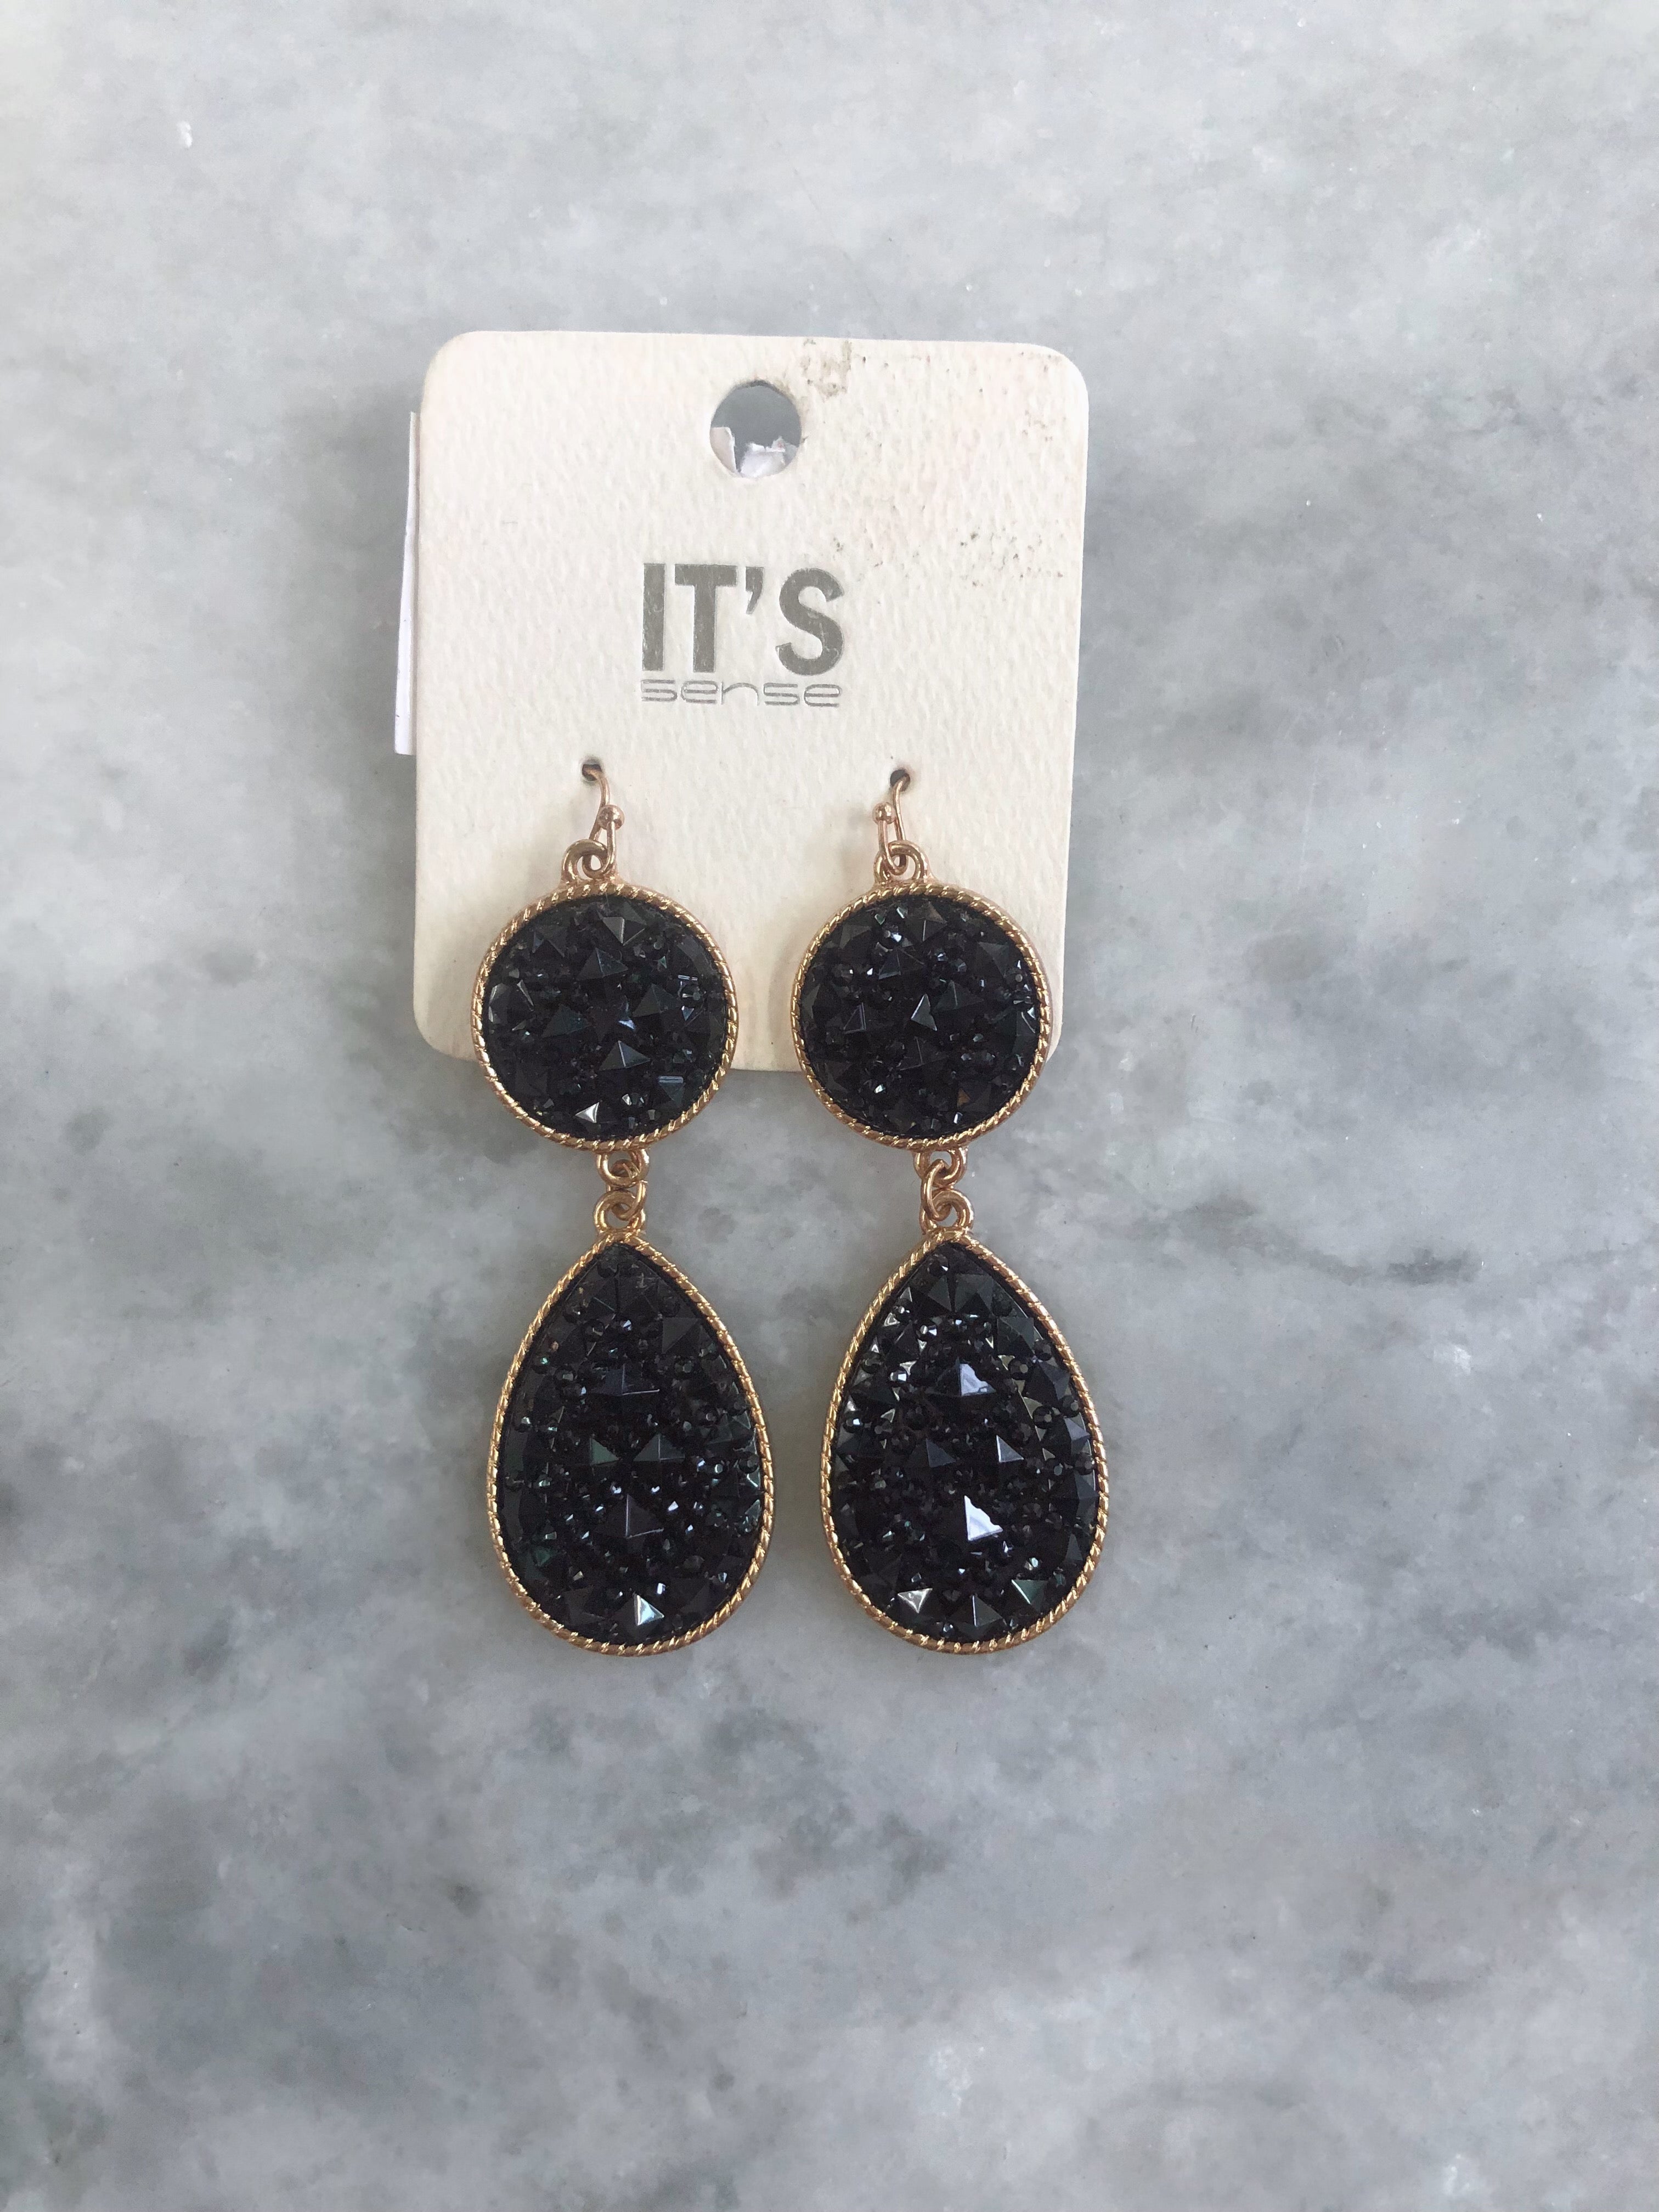 It’s Black Earrings